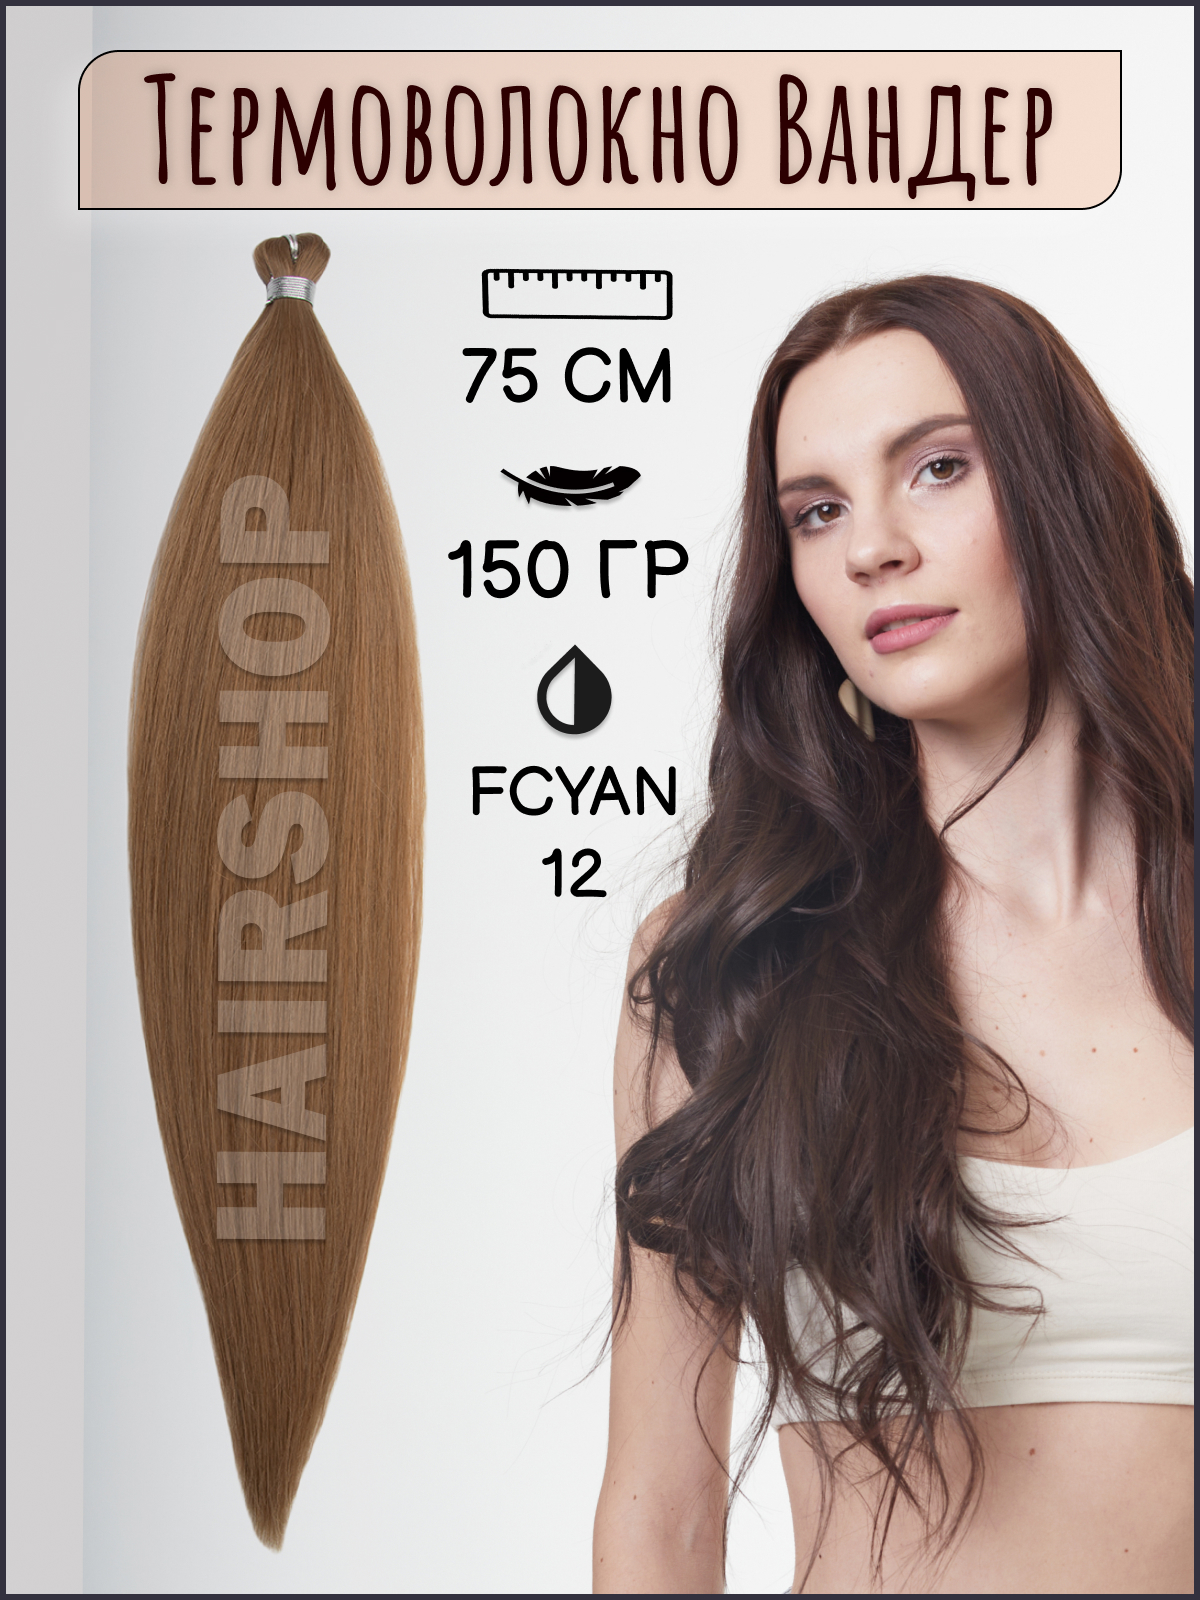 Термоволокно для наращивания Hairshop Вандер FCYAN 12 150г 150см термоволокно для наращивания hairshop вандер 6 150г 150см